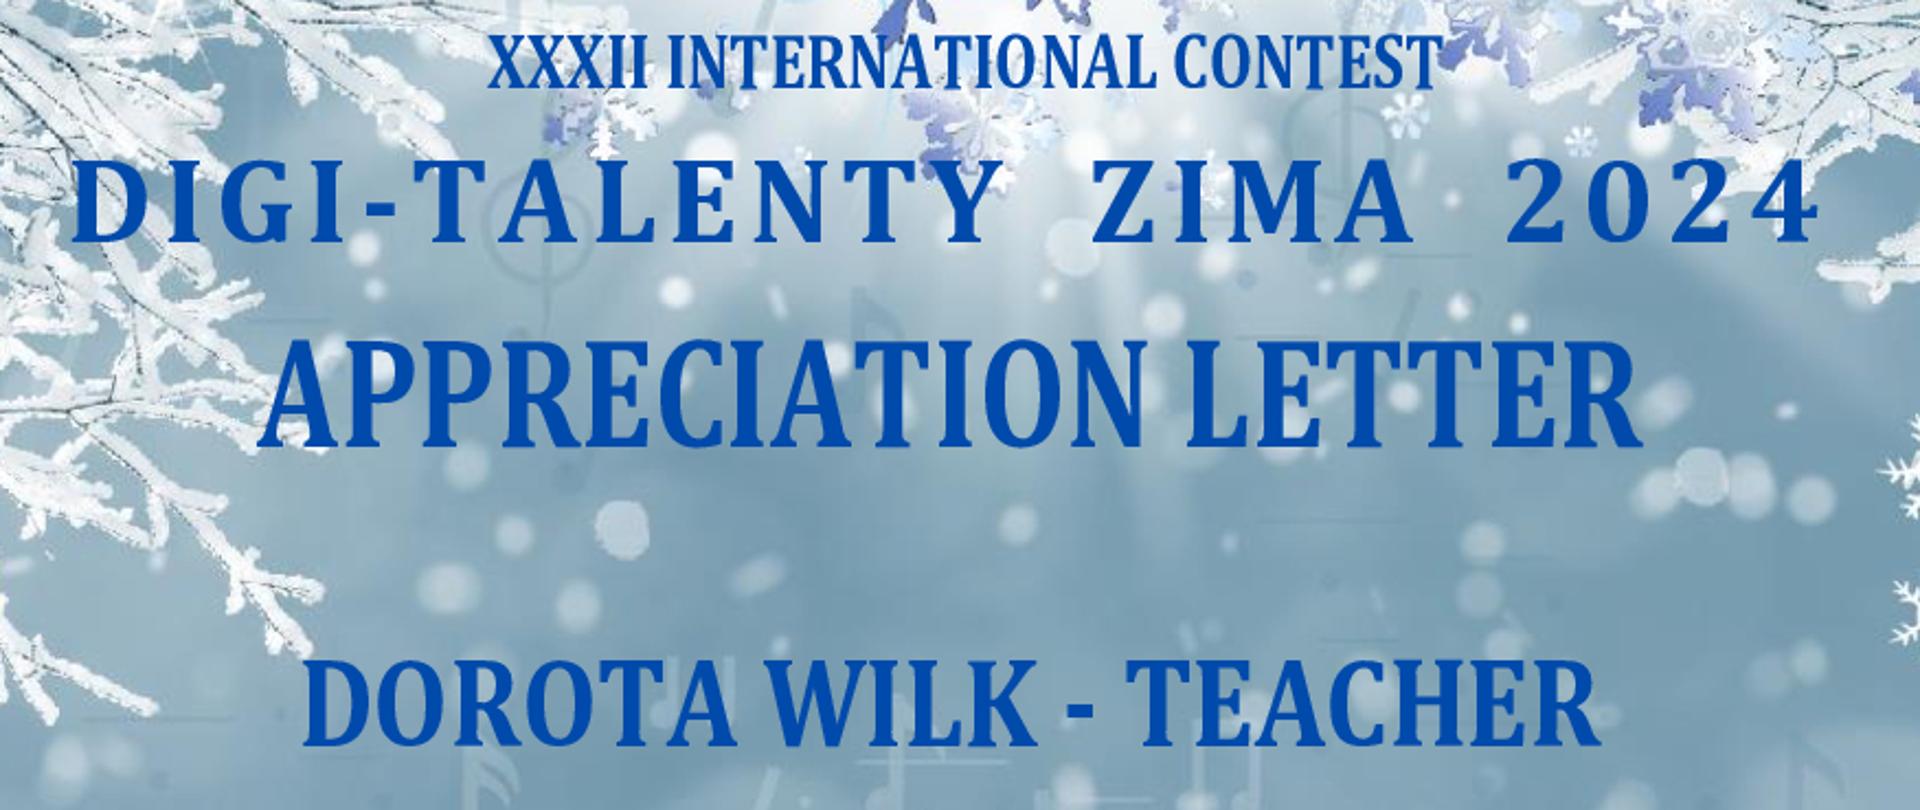 dyplom utrzymany w zimowej aurze z napisami XXXII INTERNATIONAL CONTEST DIGI-TALENTY ZIMA 2024, APPRECIATION LETTER DOROTA WILK - TEACHER, THE ORGANIZING COMMITTEE OF THE CONTEST "DIGI-TALENTY" WOULD LIKE TO EXPRESS OUR SINCERE GRATITUDE FOR YOUR DEDICATION TO CULTURE, EDUCATION, AND CREATIVITY.